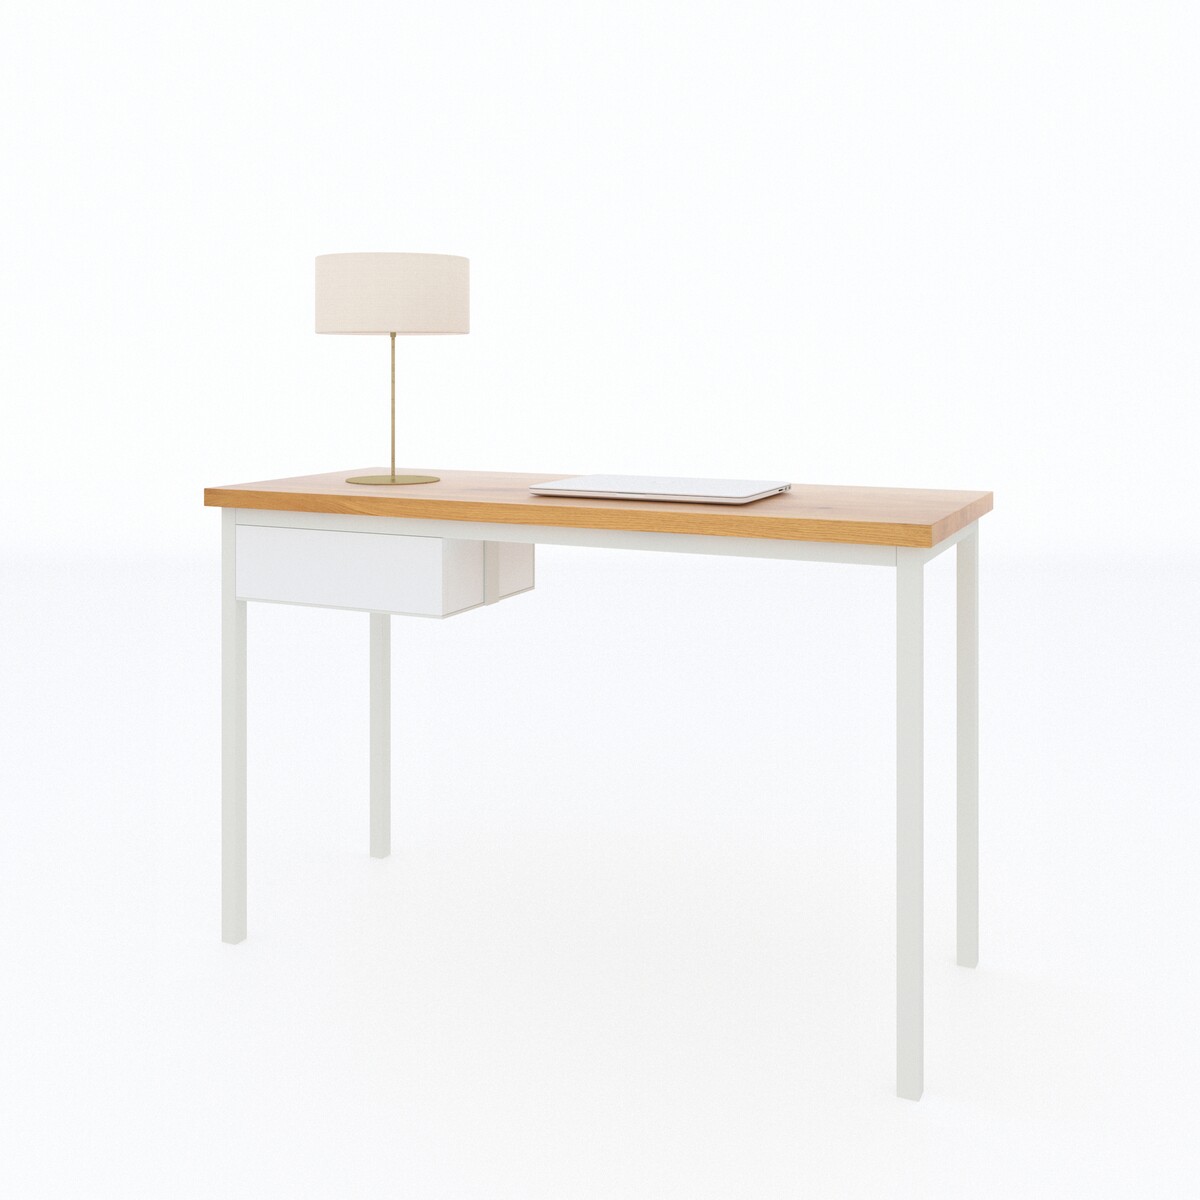 małe białe biurko z drewnianym blatem, białe biurko 